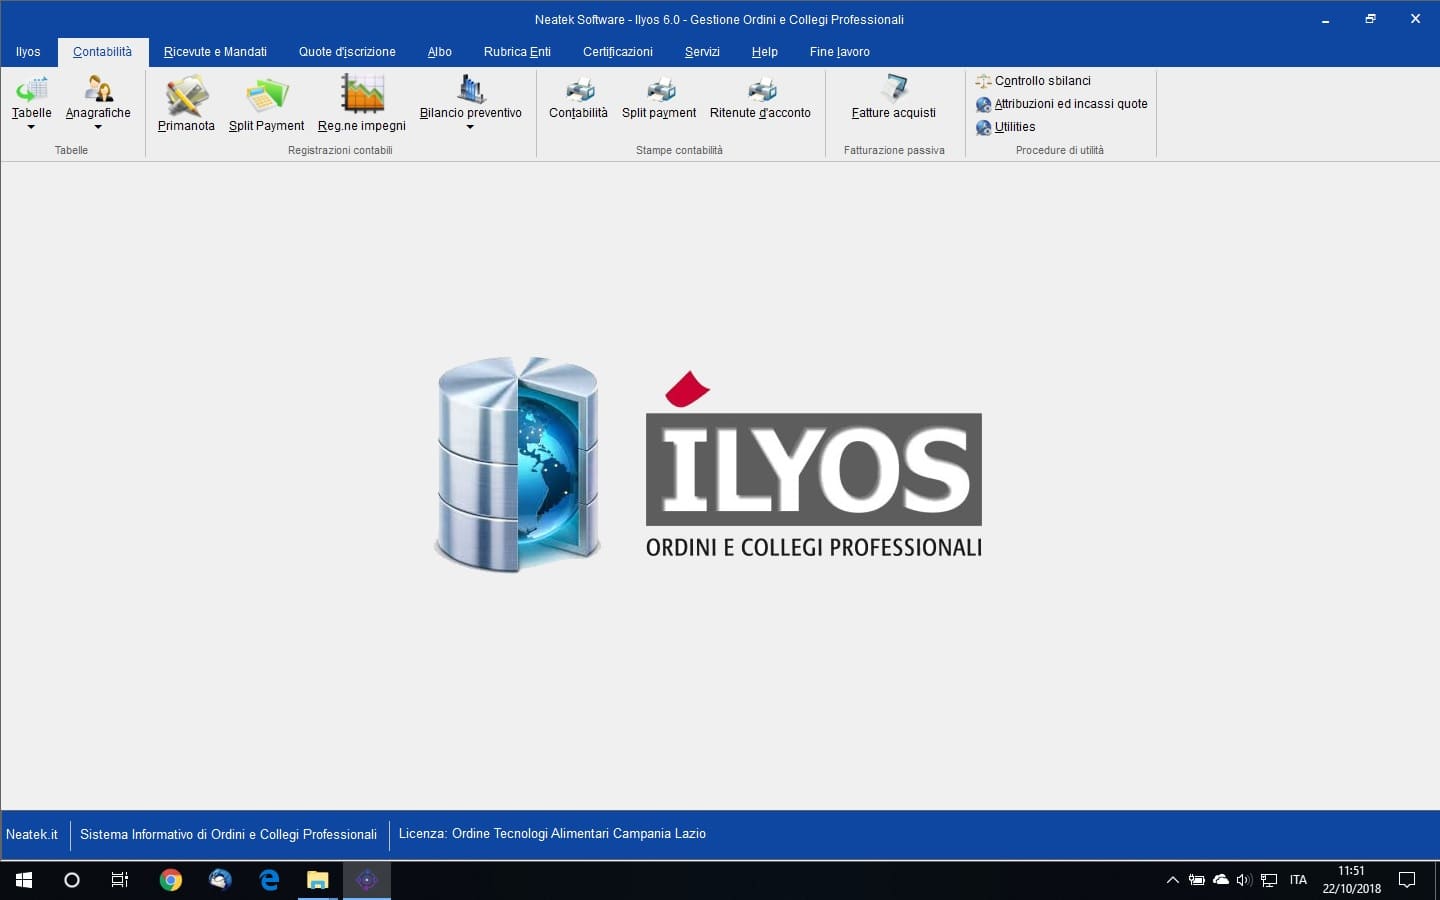 Ilyos il Sistema Informativo di Ordini e Collegi Professionali 